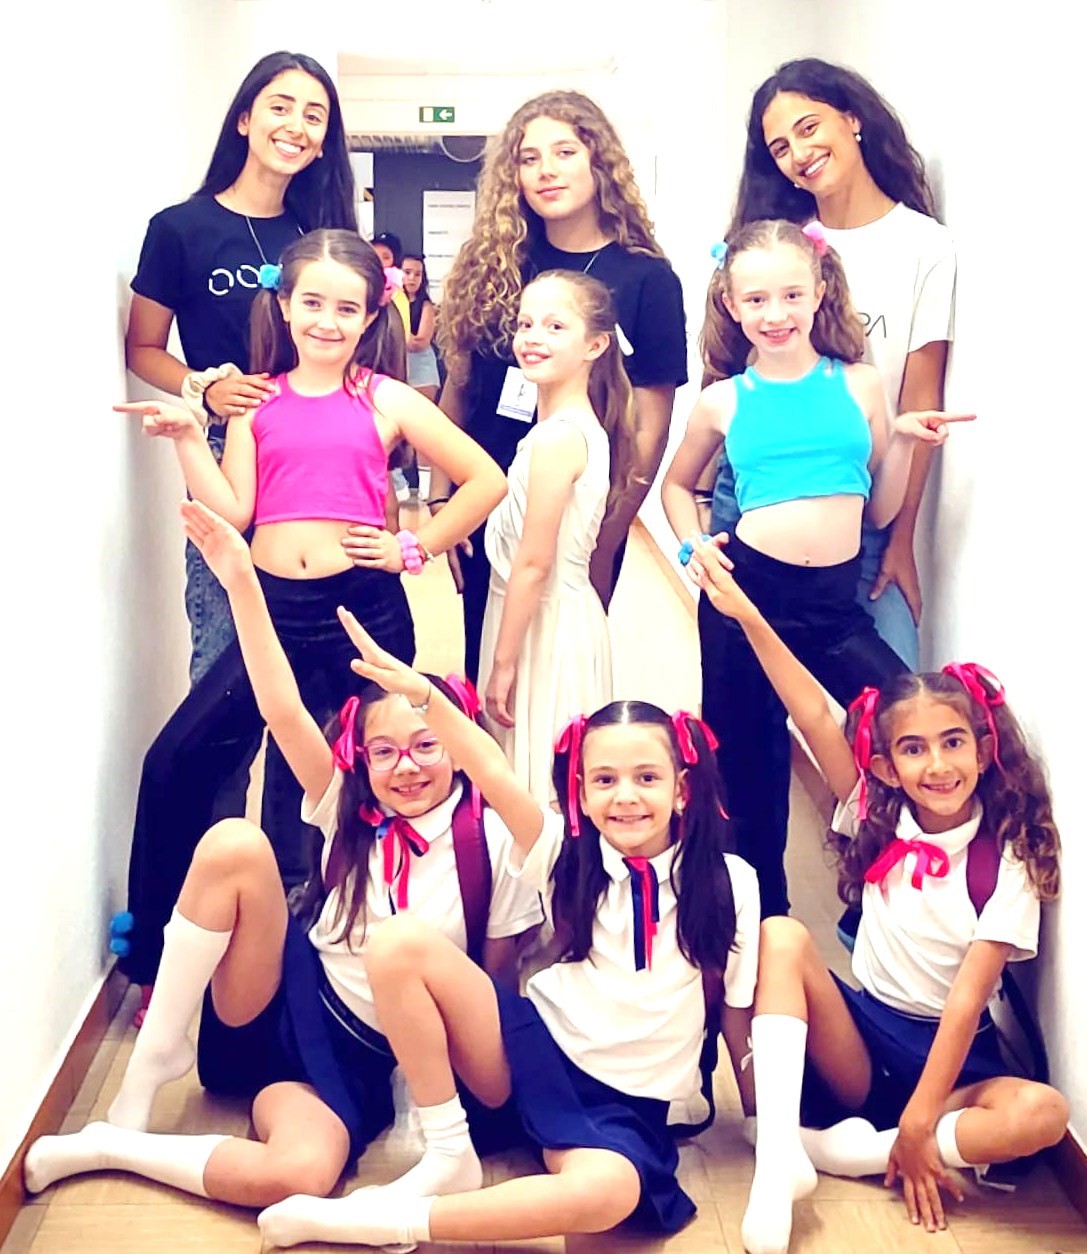 Grupo Oosfera De Soure Conquistou Três Primeiros Lugares No Festival Dance Kids Em Vila Franca De Xira